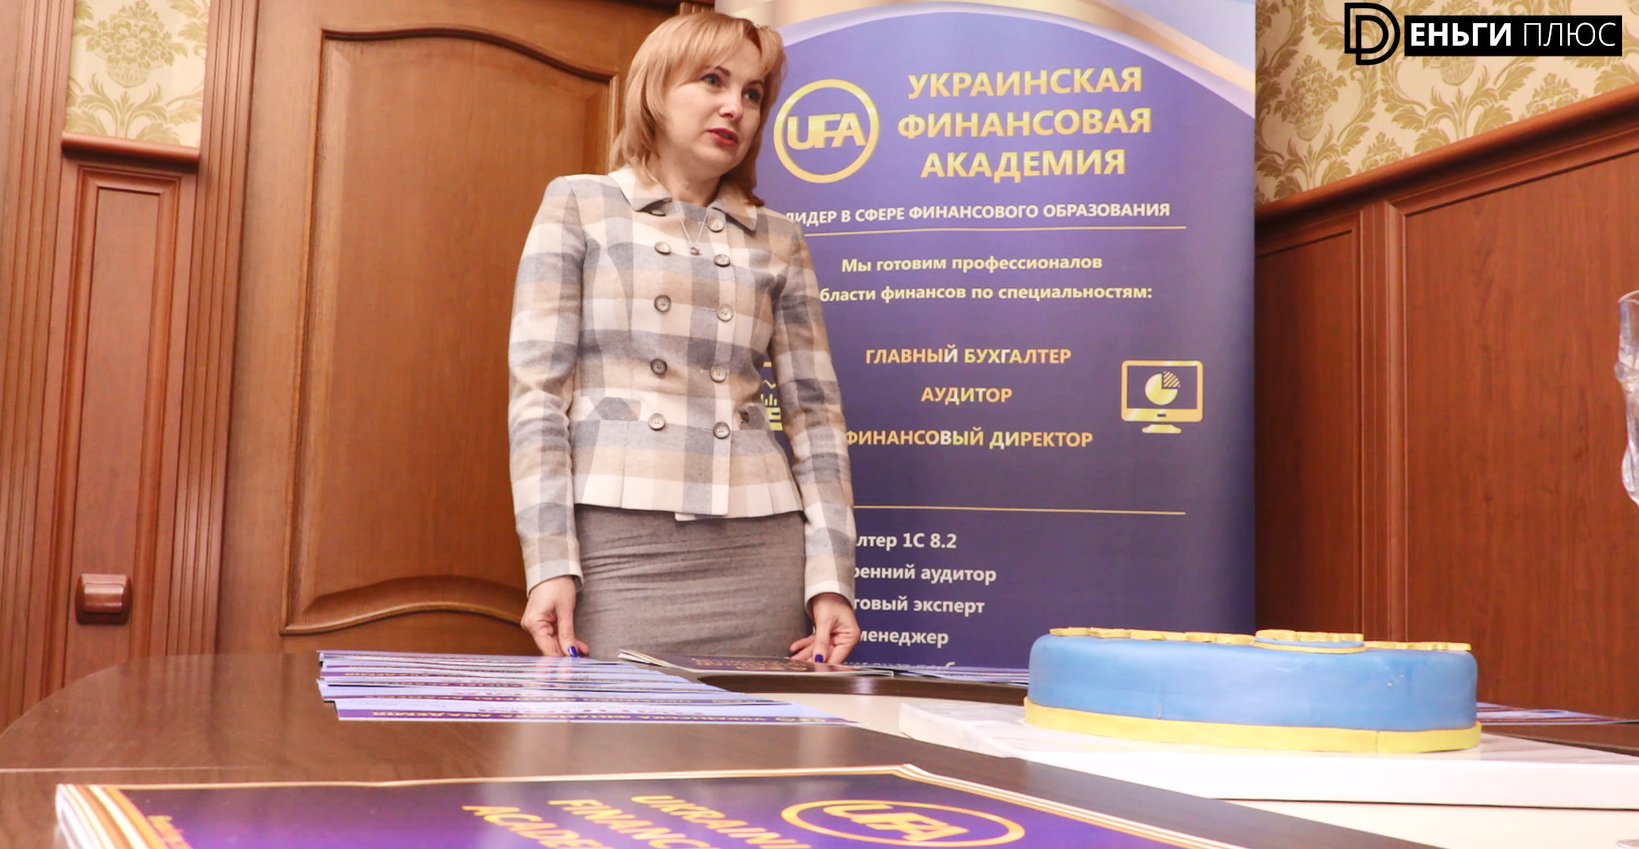 Украинская Финансовая Академия